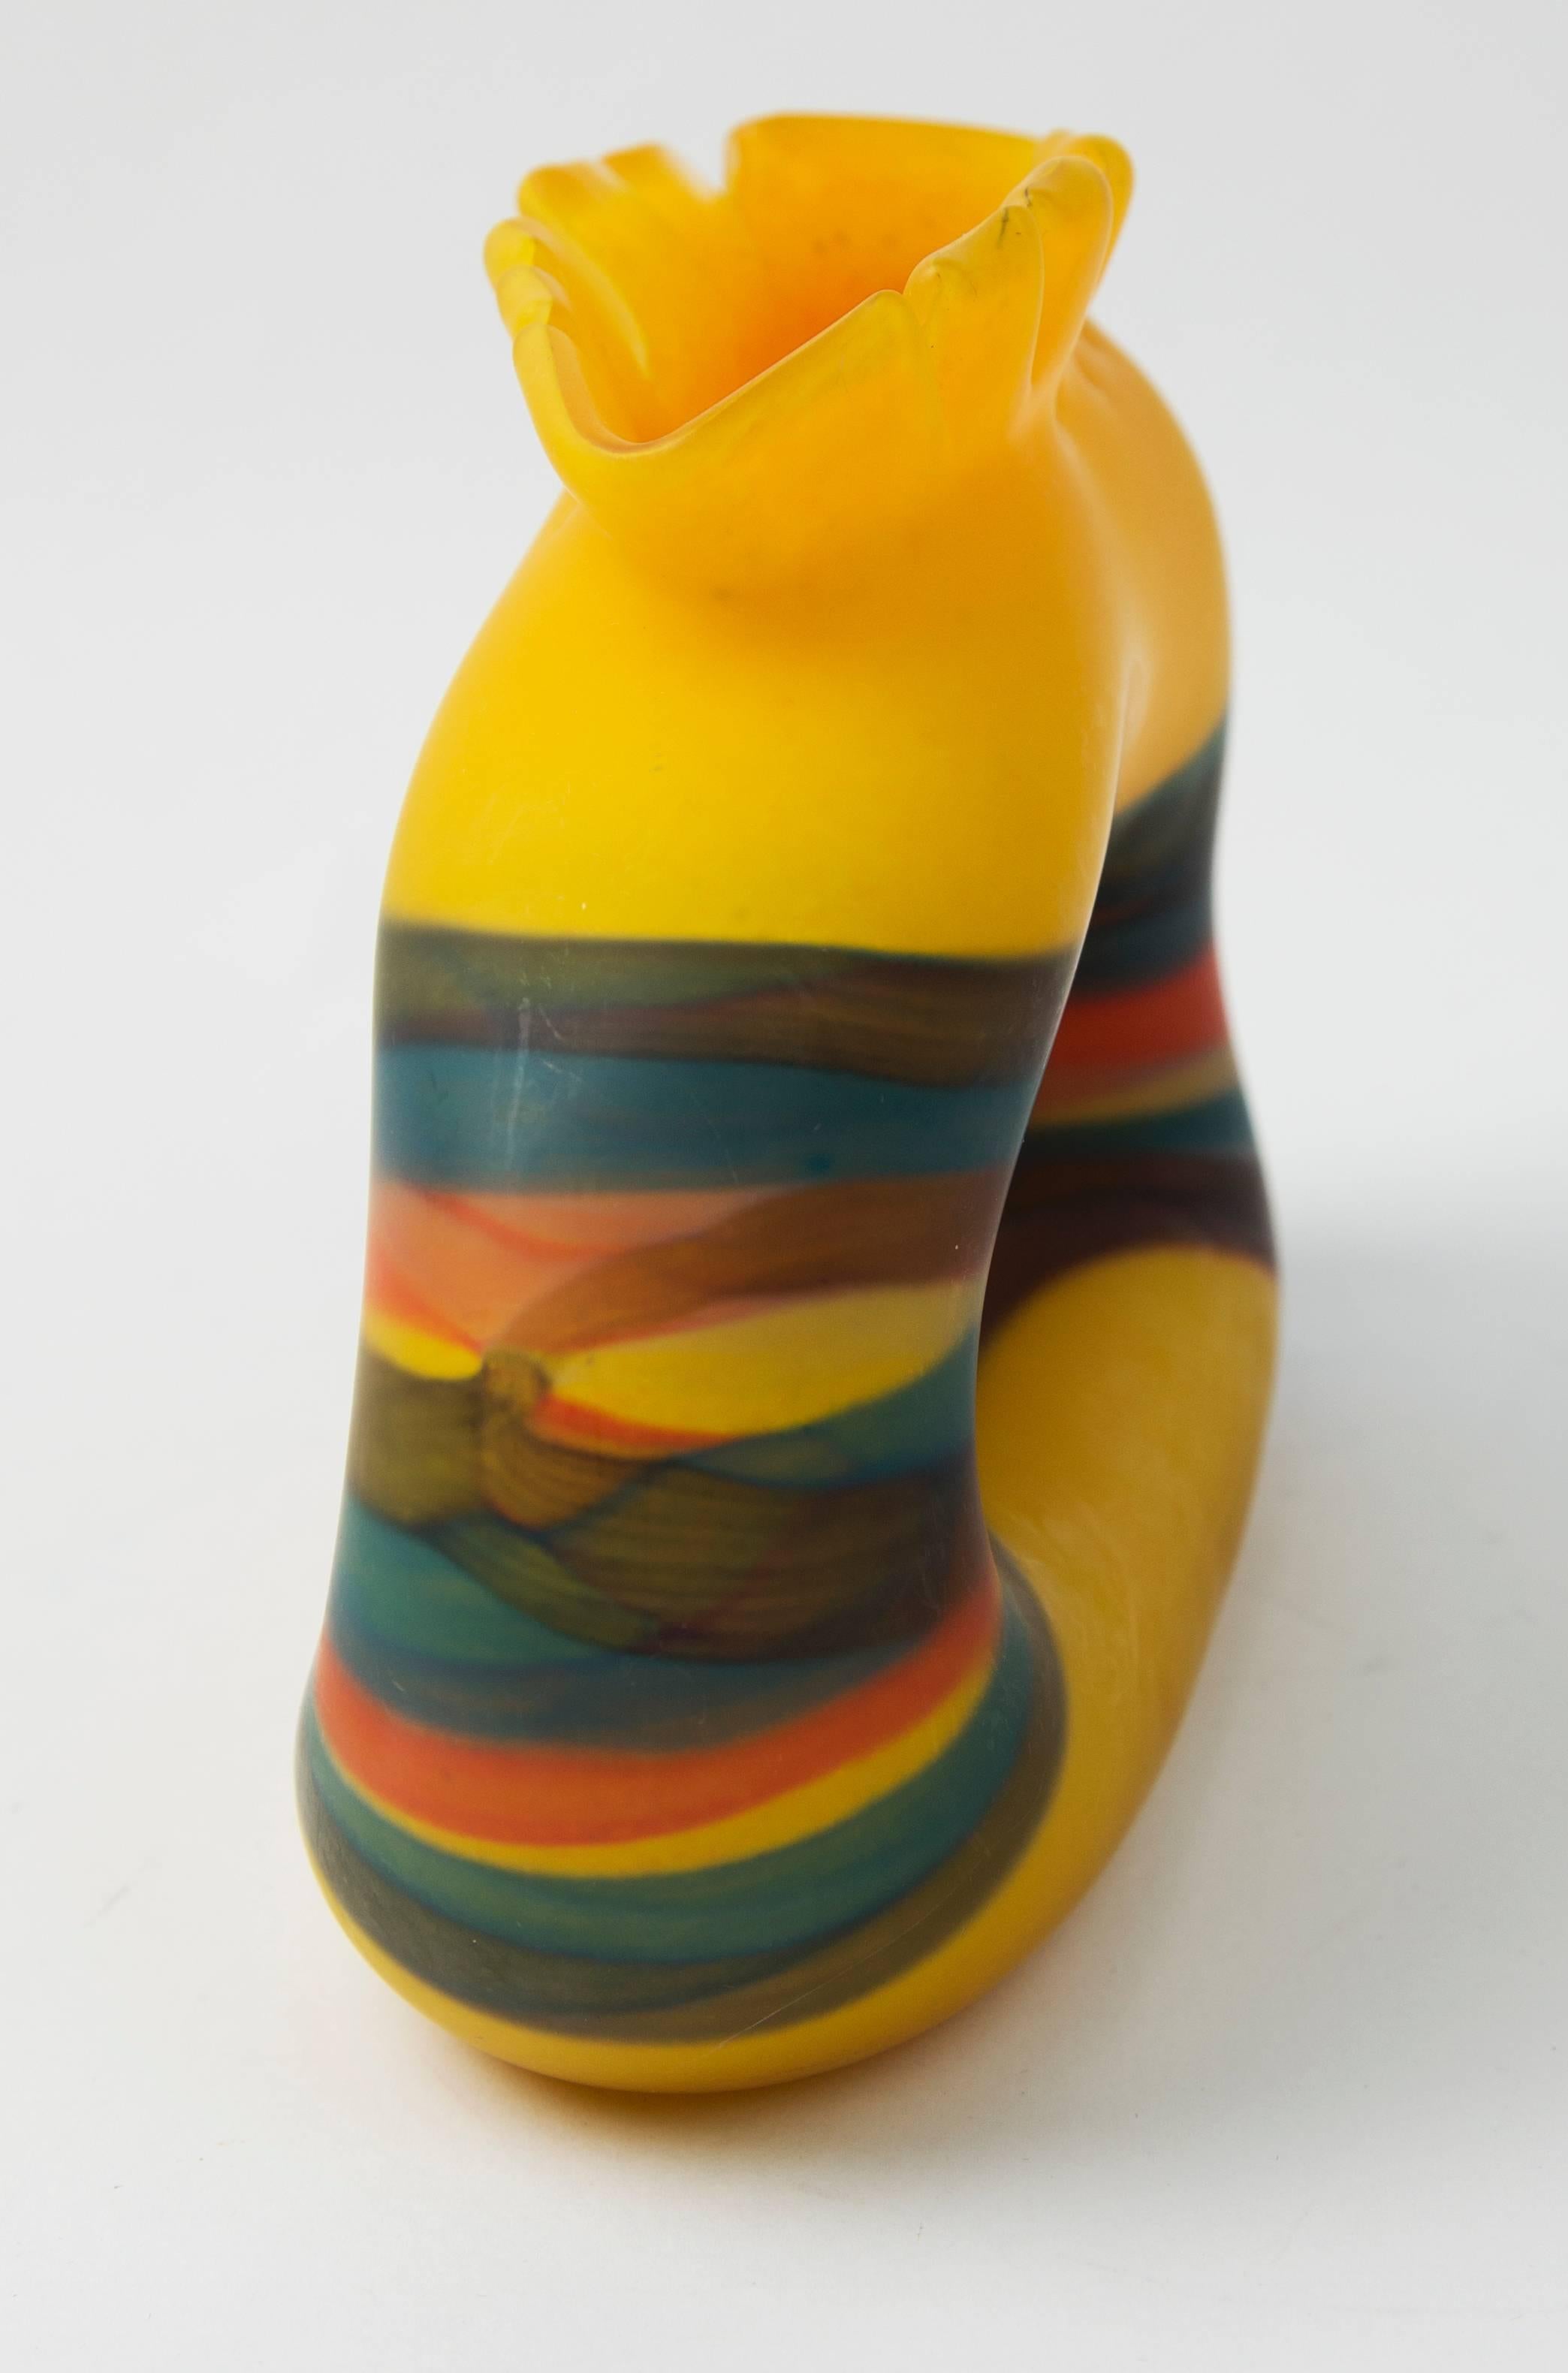 Lebendig gelbe und mehrfarbig gestreifte eiförmige Vase, mundgeblasen vom bekannten rumänischen Glaskünstler Ioan Nemtoi (geb. 1964-).
Die abgeschnittene gelbe Lippe über einer leuchtend matten gelben Basis mit einer eingeklemmten Mitte, die von